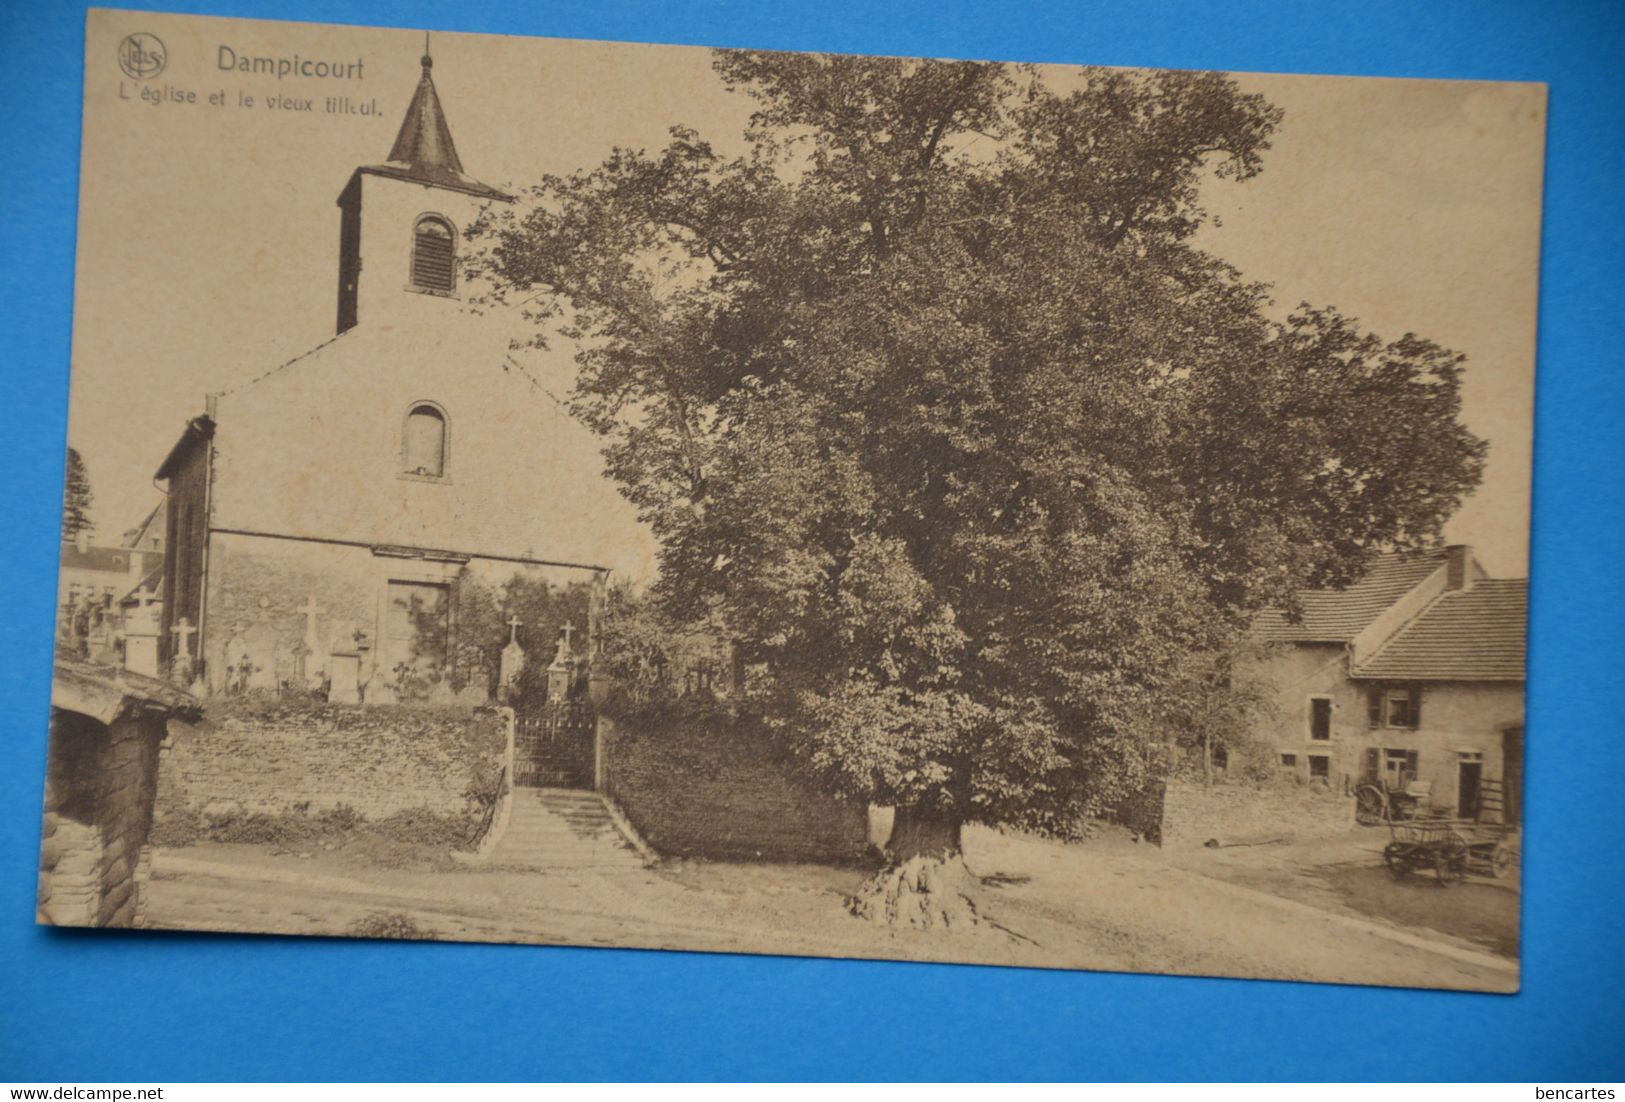 Dampicourt : L'église Et Le Vieux Tilleul - Rouvroy